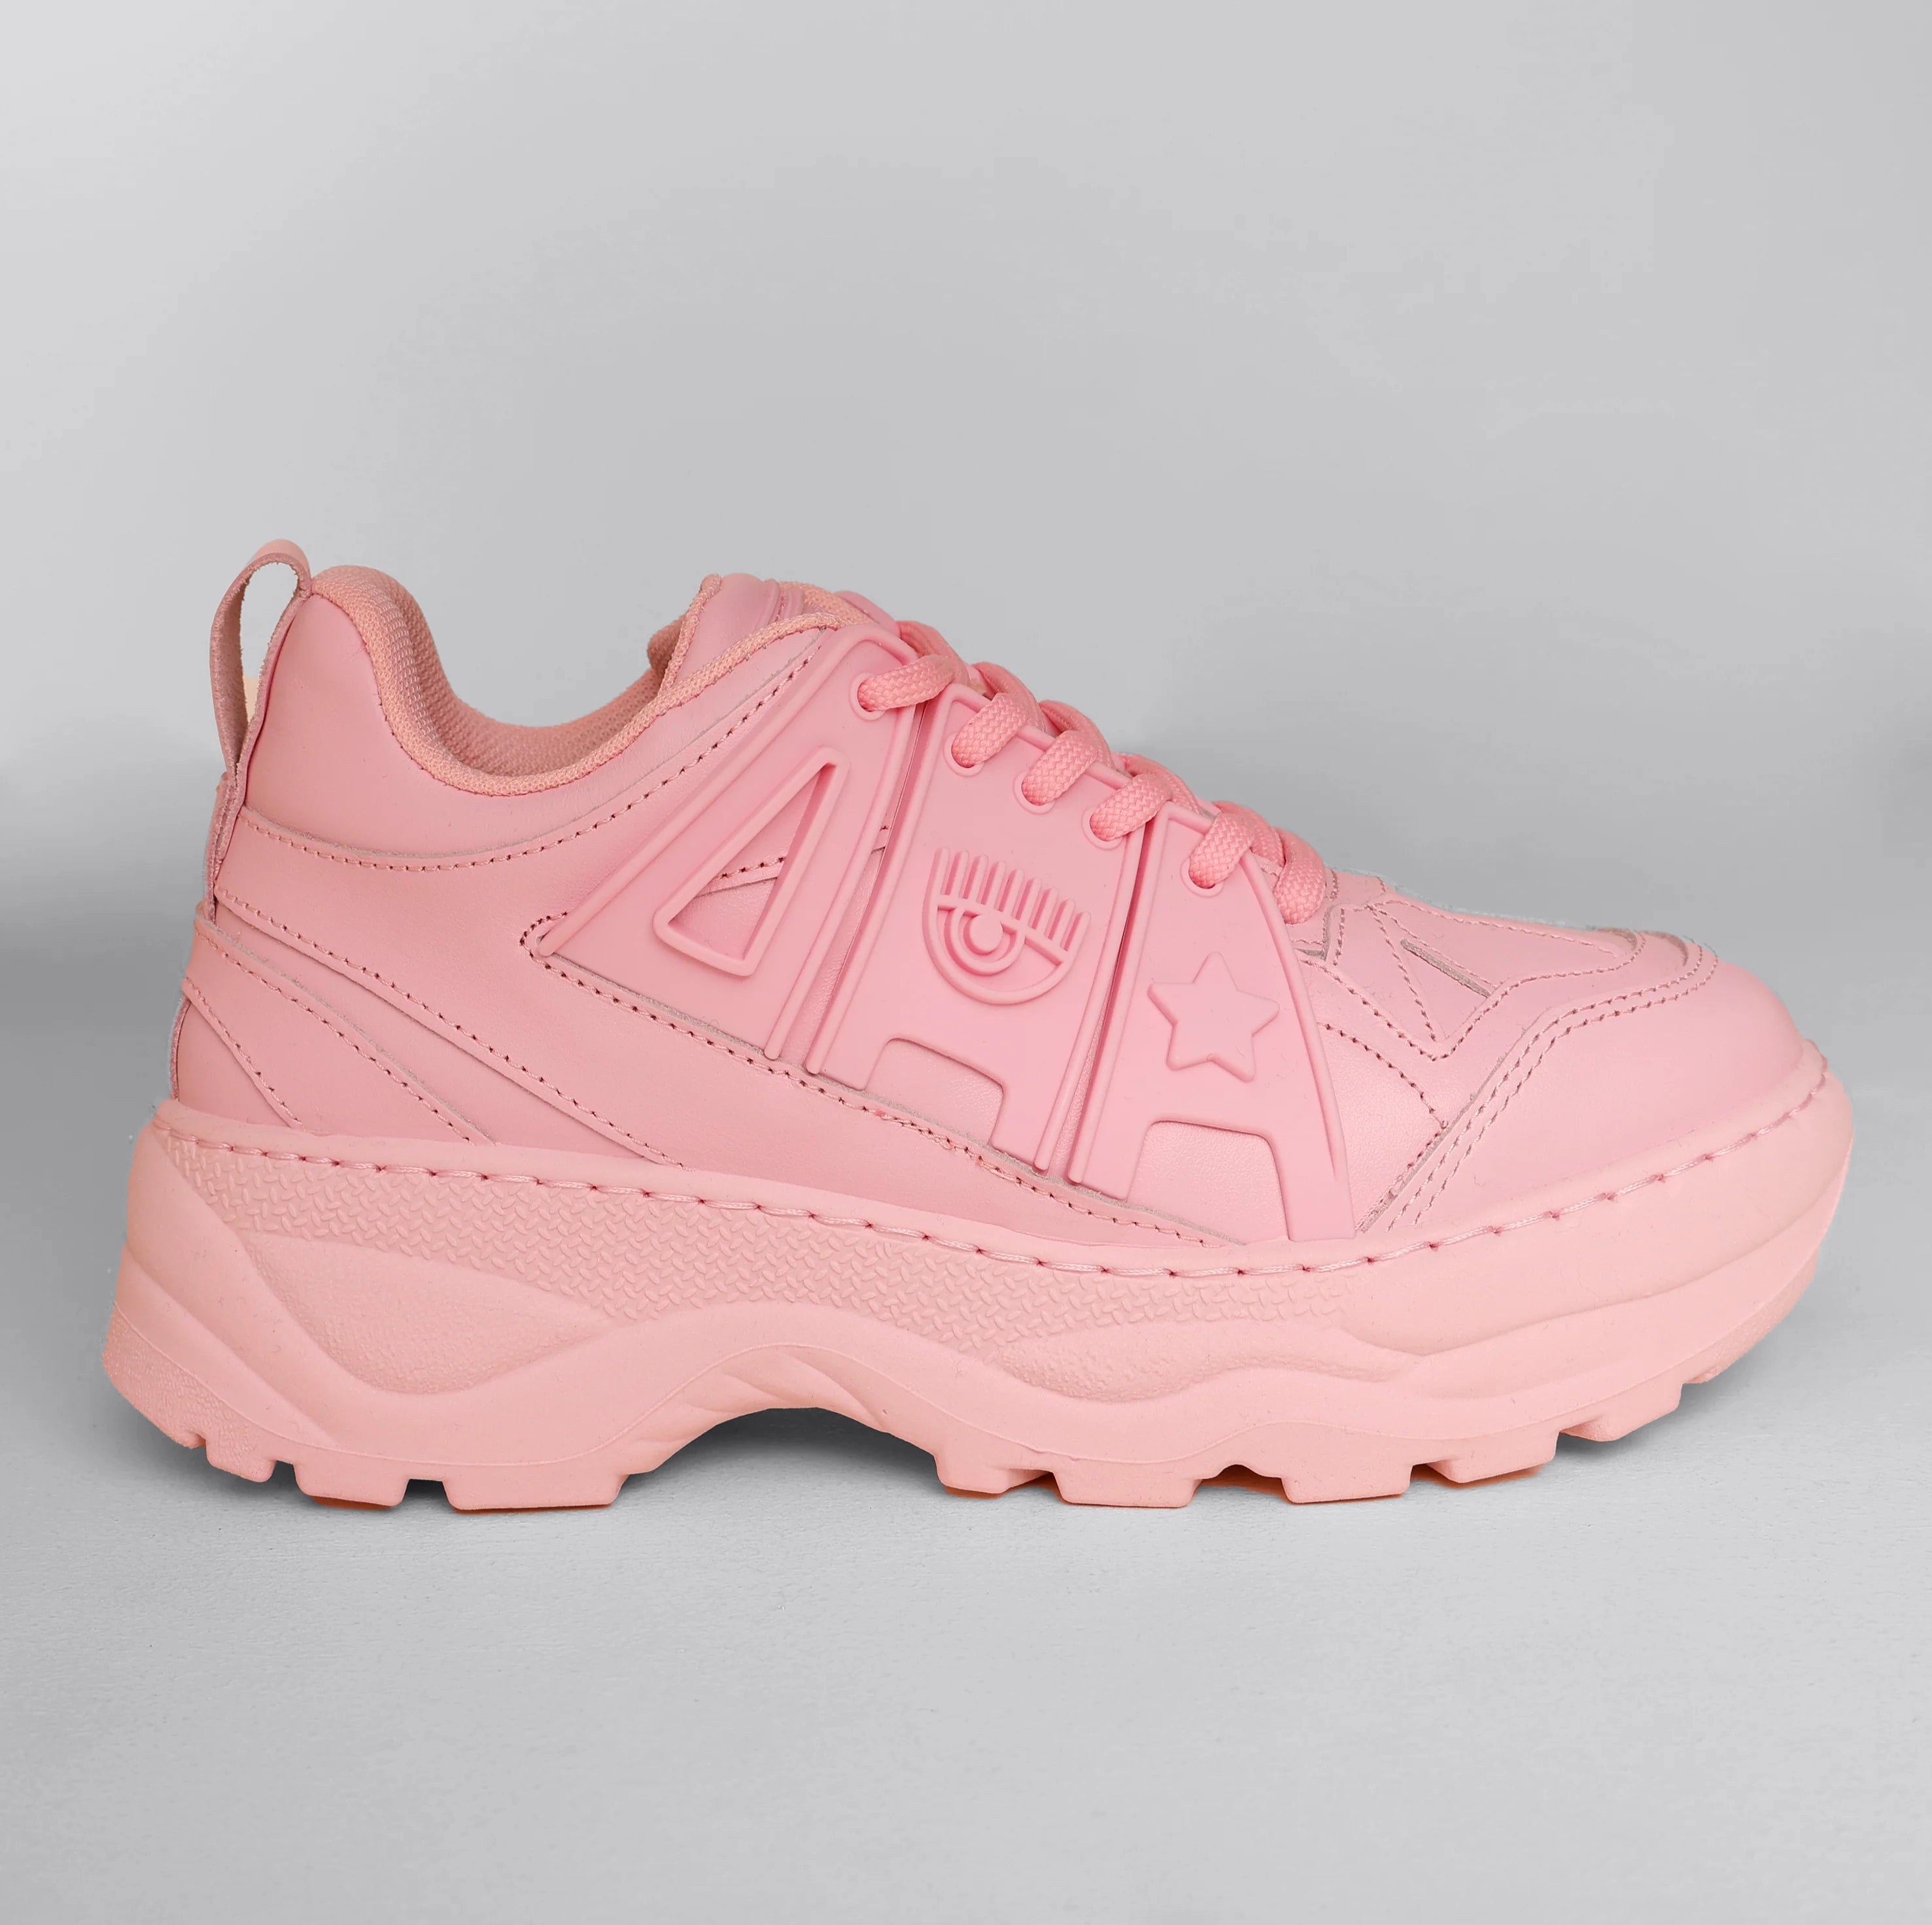 Sneakers Chiara Ferragni Eye Fly - Pink Leather